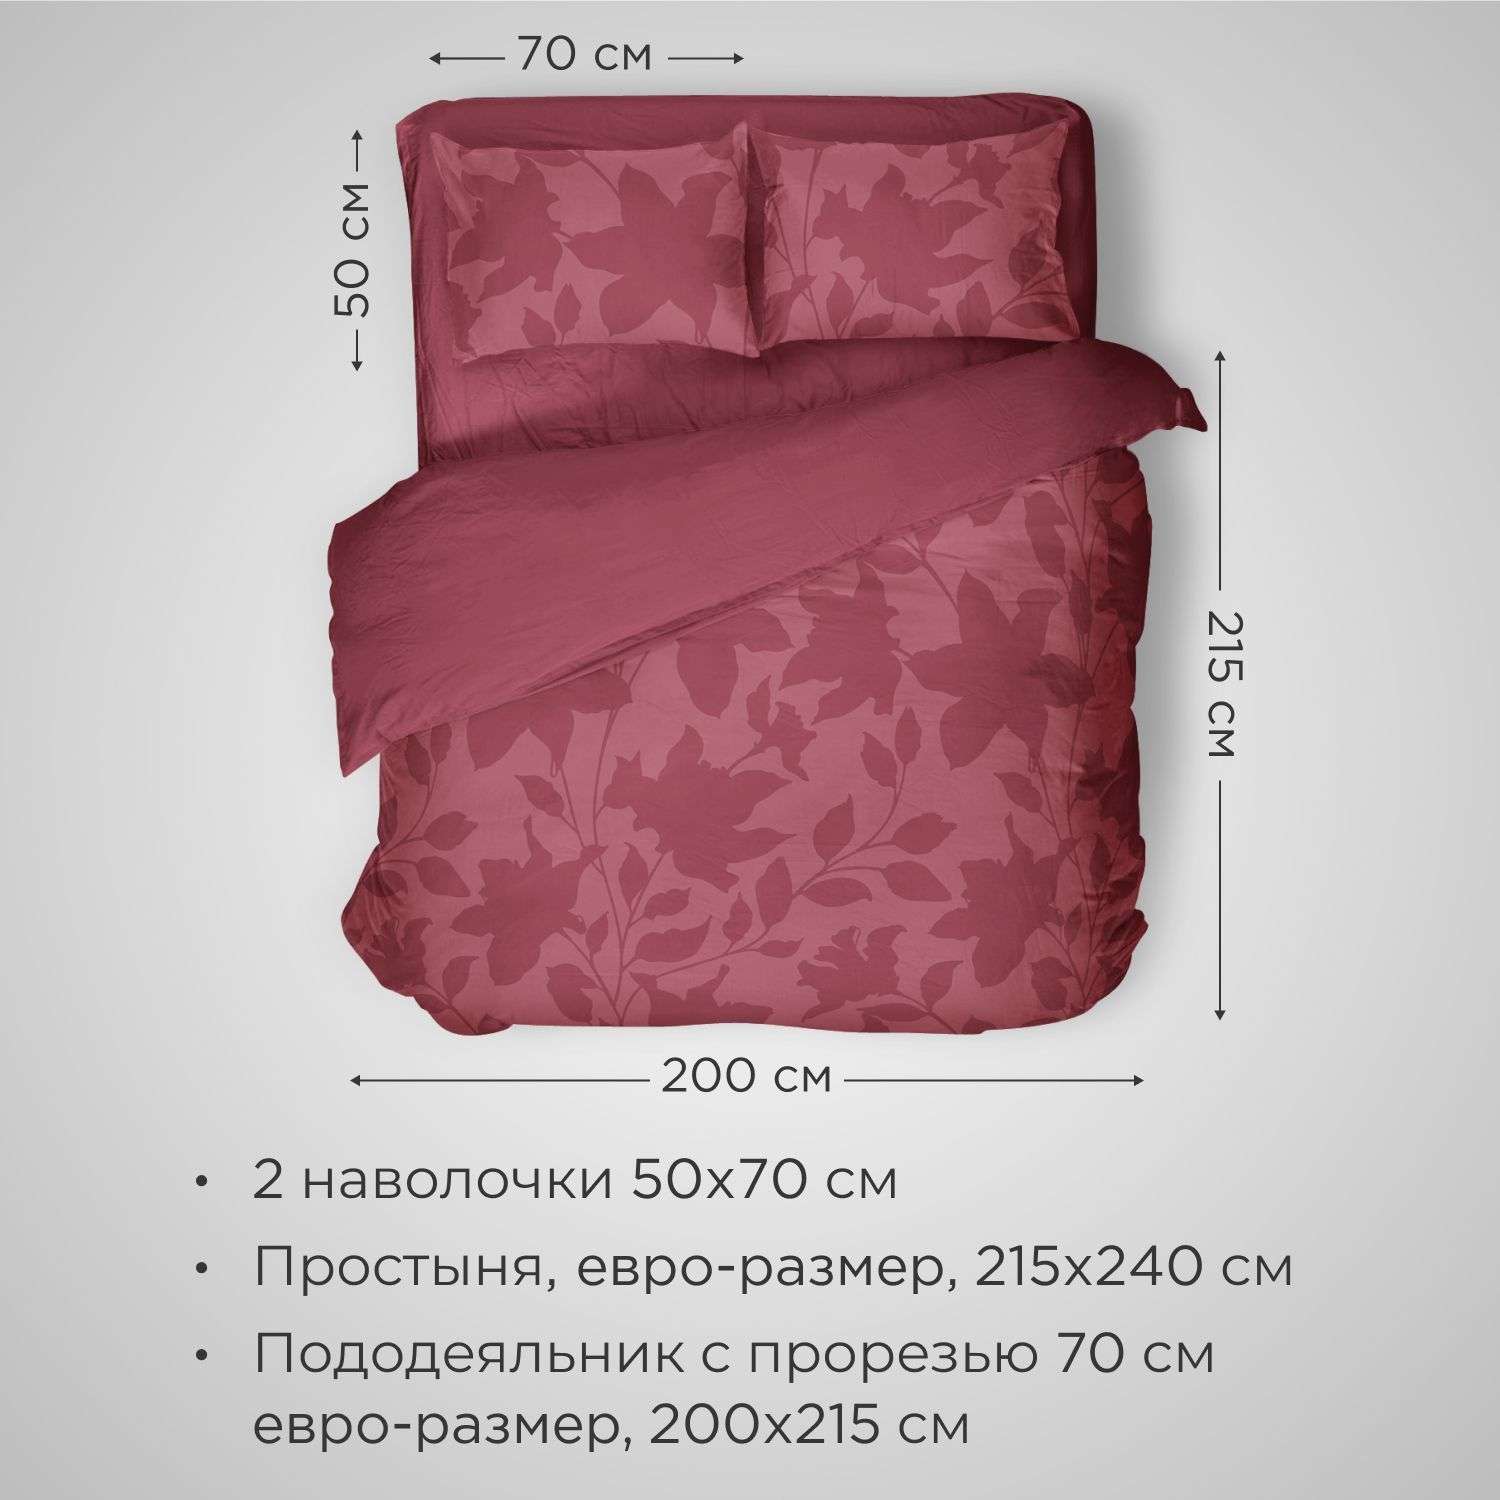 Комплект постельного белья SONNO URBAN FLOWERS евро-размер цвет Цветы тёмный гранат - фото 2